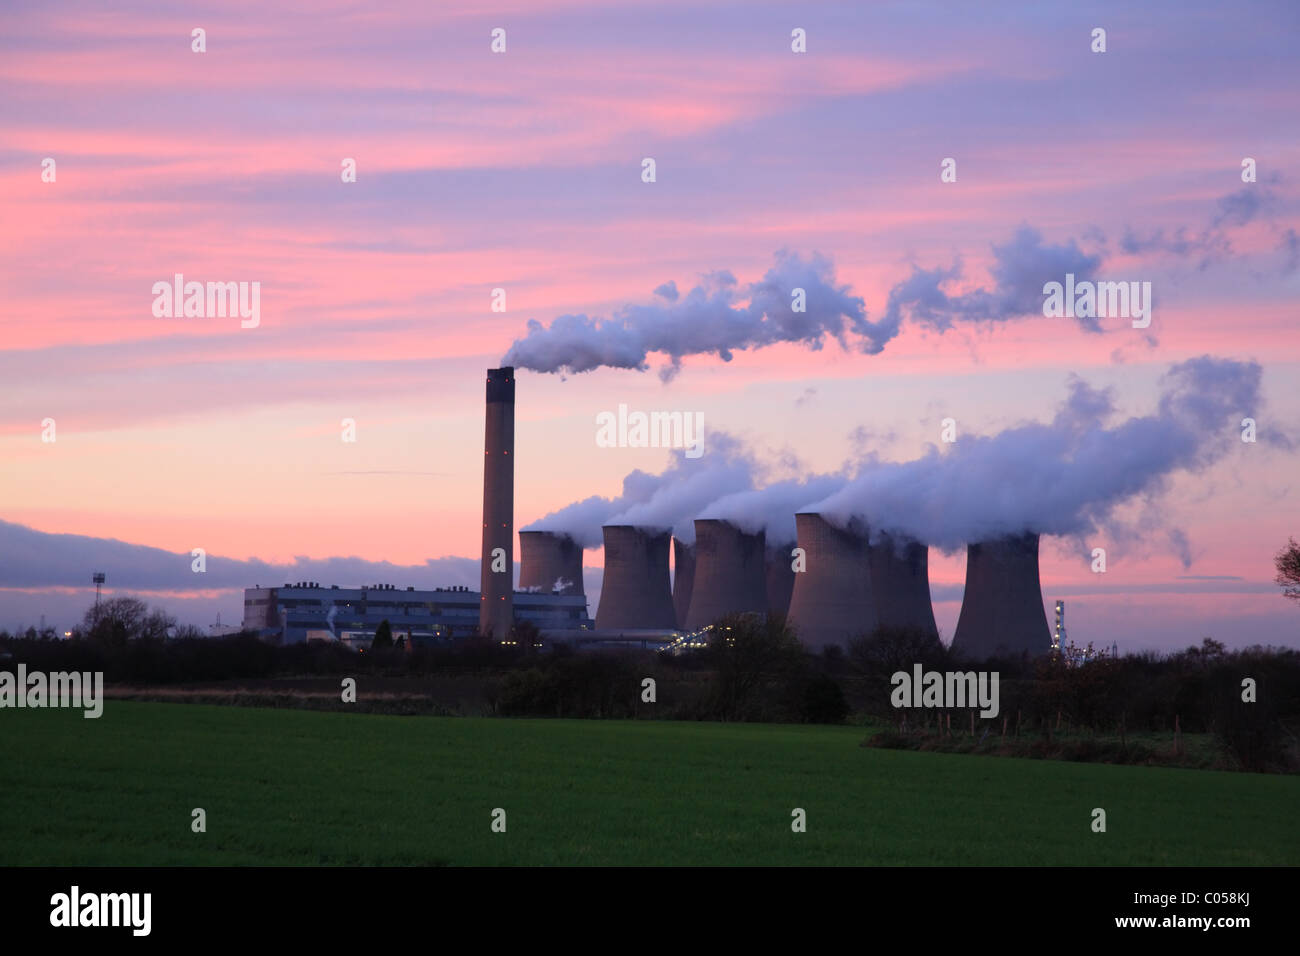 La centrale électrique d'Eggborough au coucher du soleil, Selby North Yorkshire Angleterre Banque D'Images